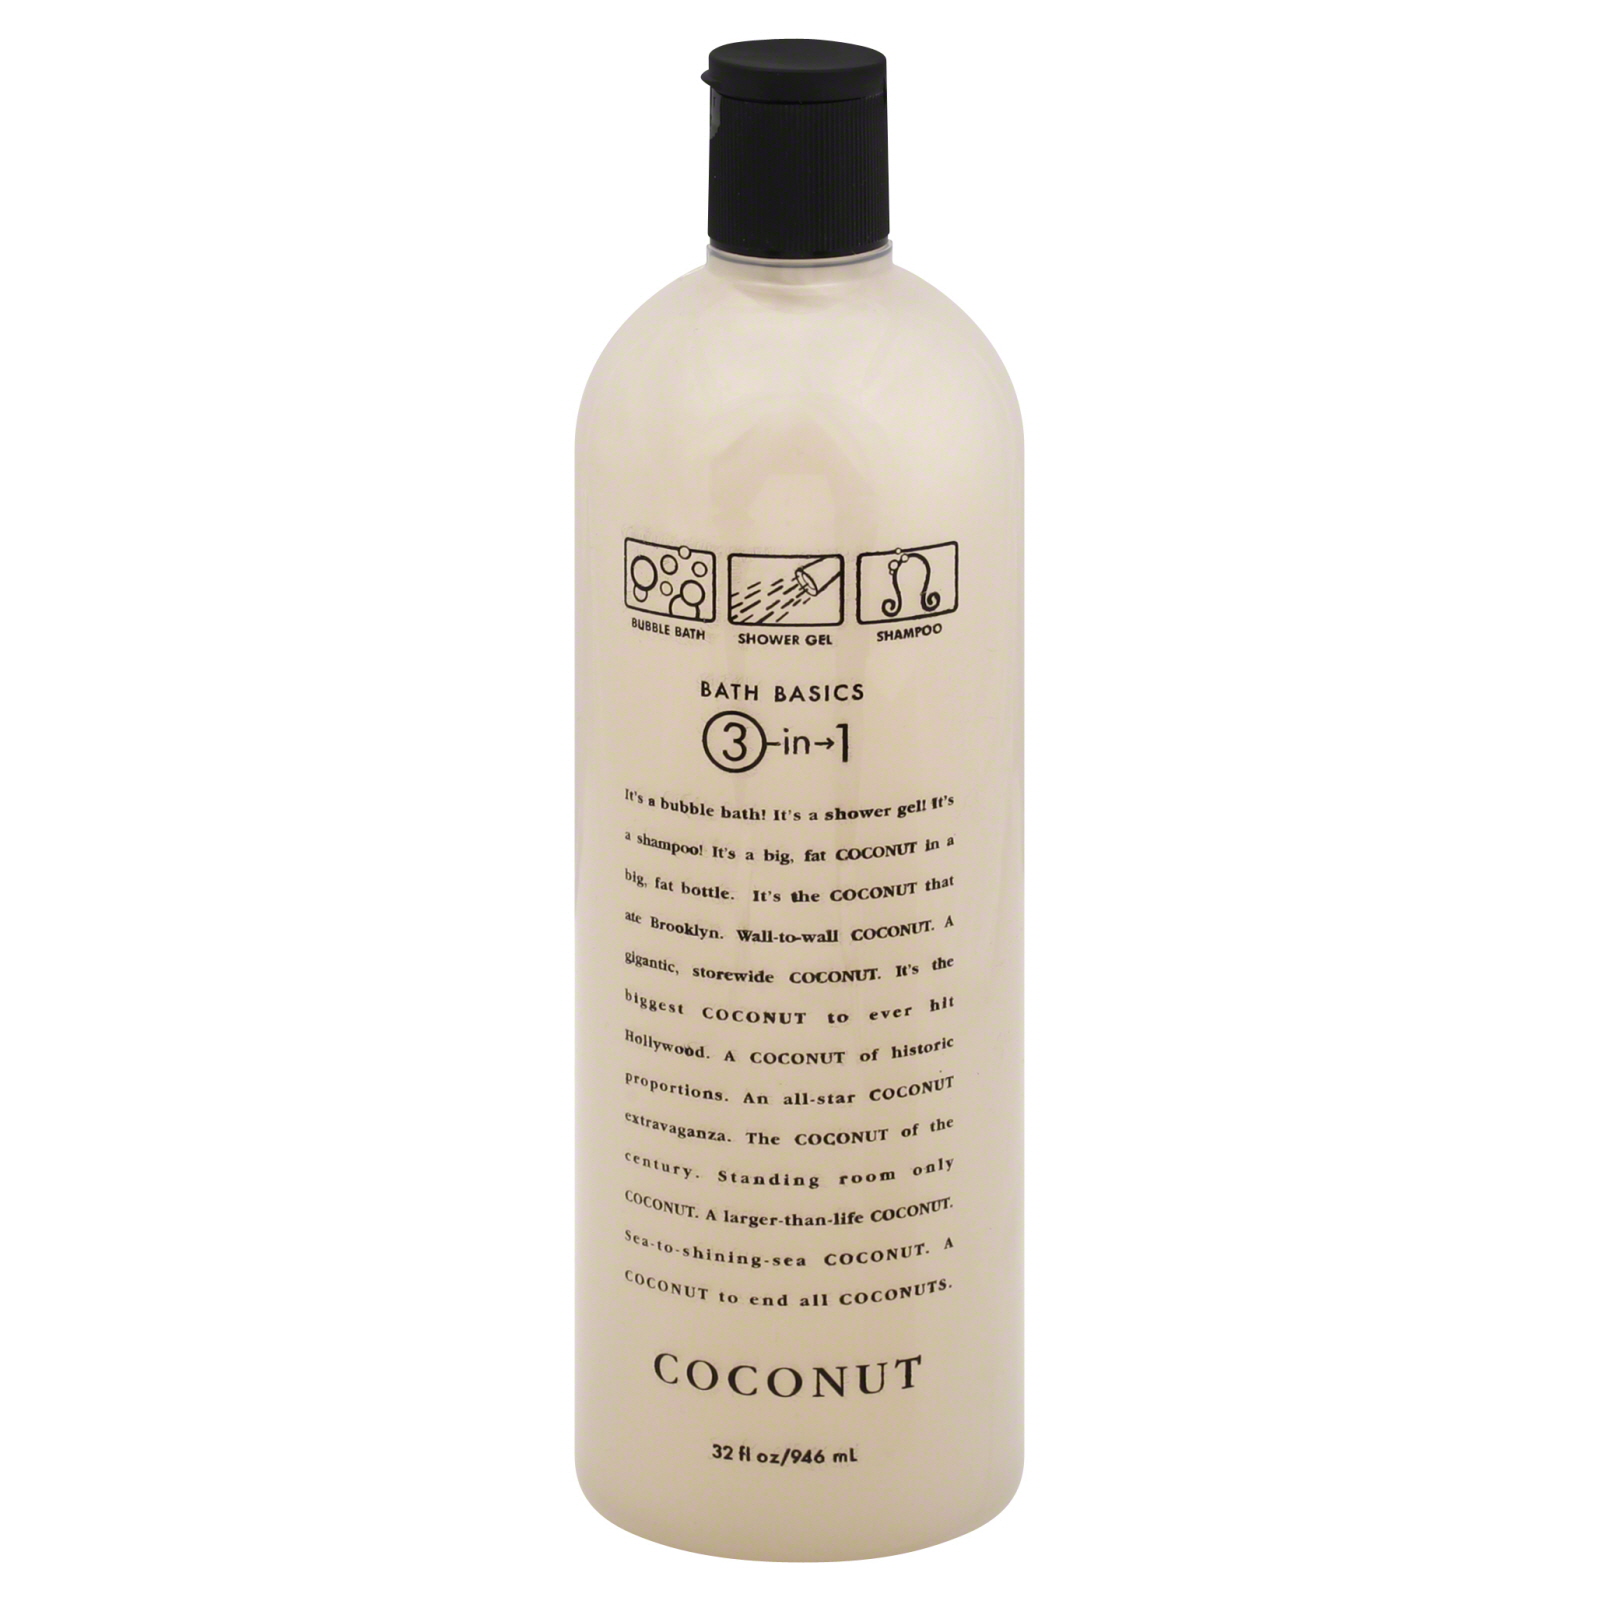 Delicious Bath Basics Bubble Bath, Shower Gel & Shampoo, 3-in-1, Coconut, 32 fl oz (946 ml)